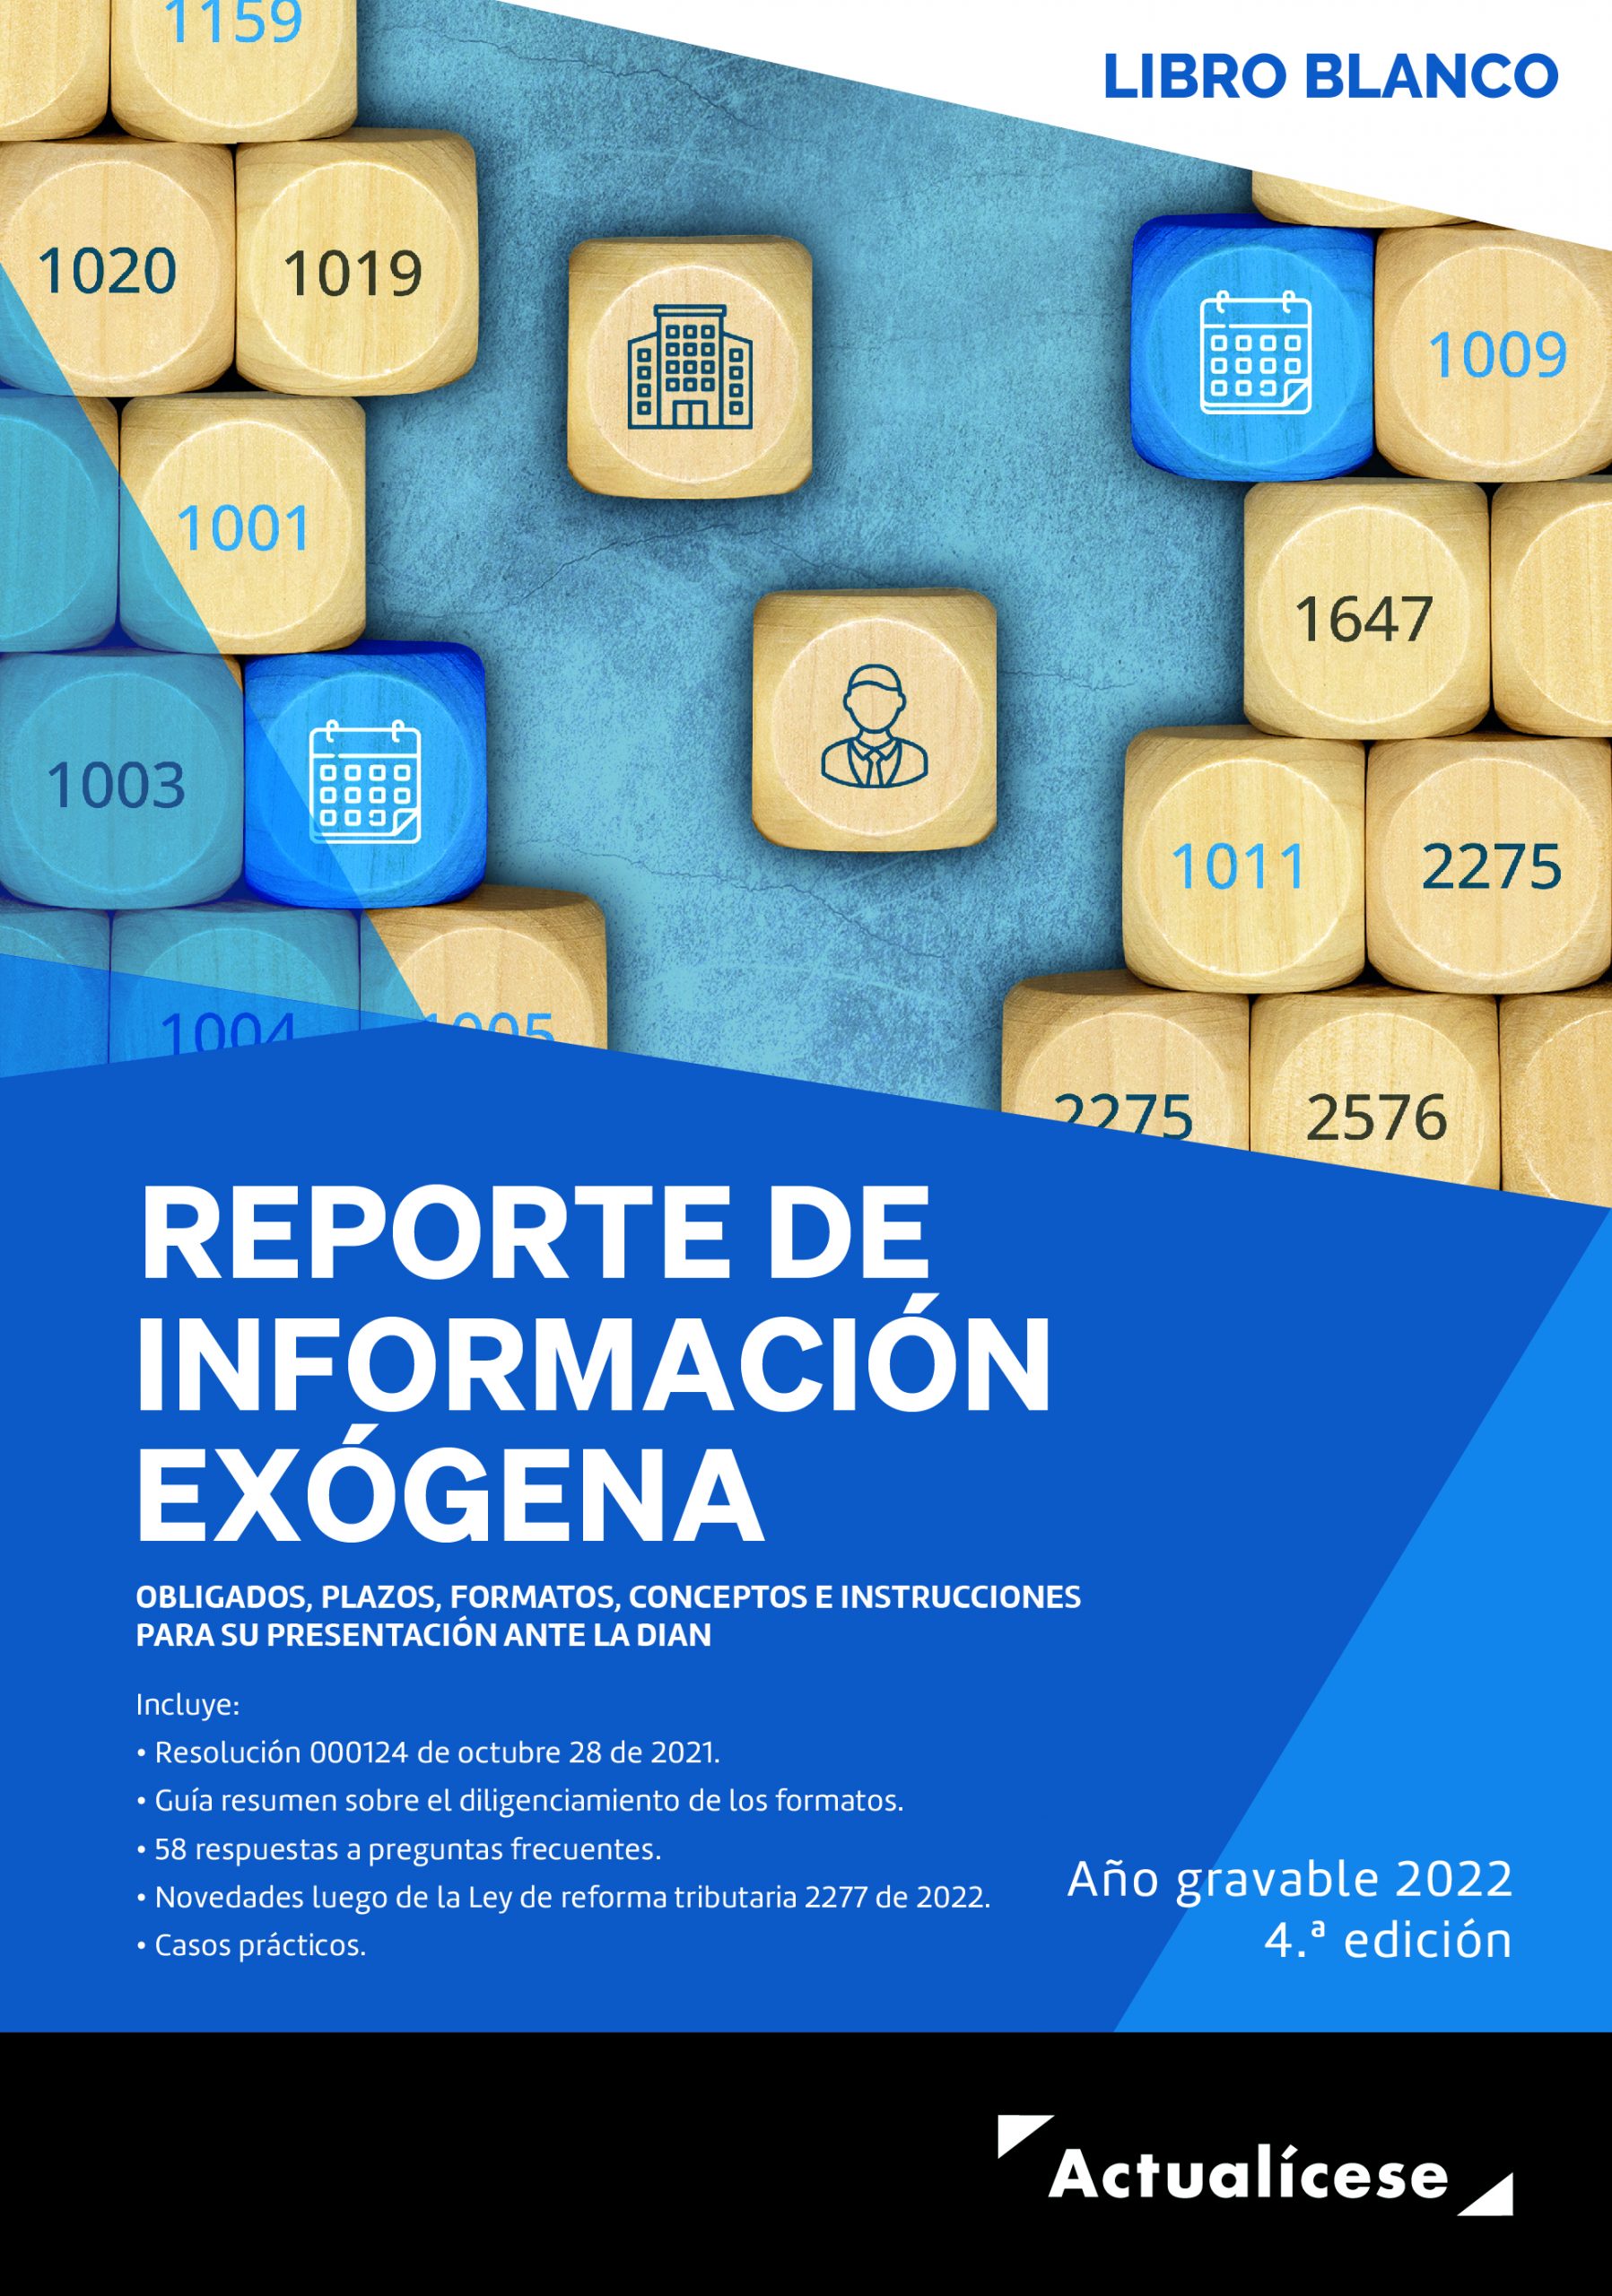 [Libro Blanco] Reporte de información exógena, año gravable 2022